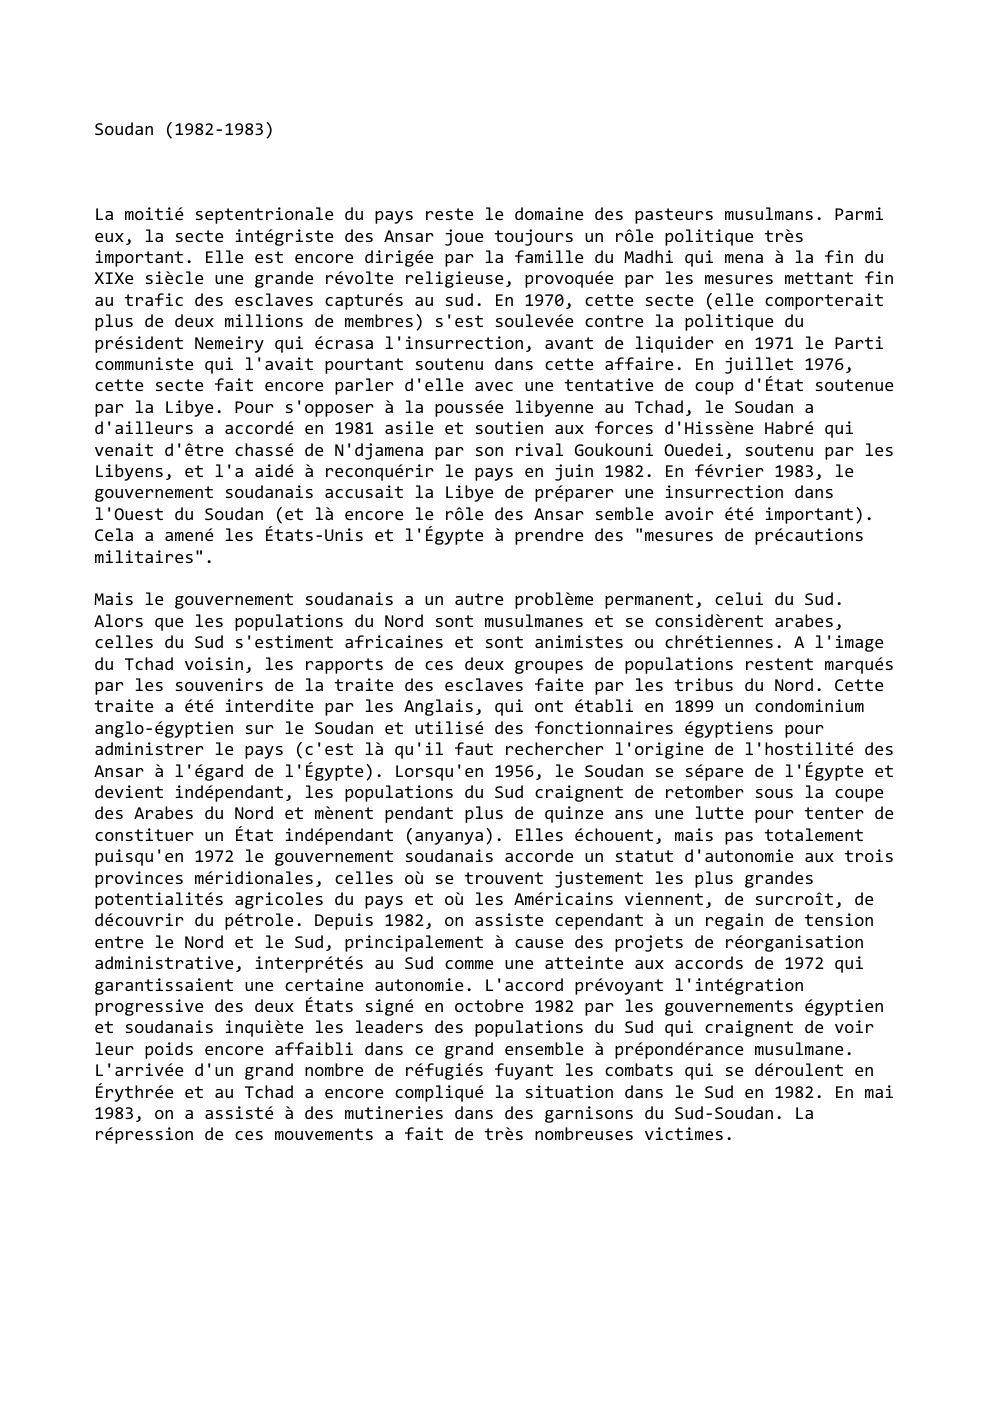 Prévisualisation du document Soudan (1982-1983)

La moitié septentrionale du pays reste le domaine des pasteurs musulmans. Parmi
eux, la secte intégriste des Ansar...